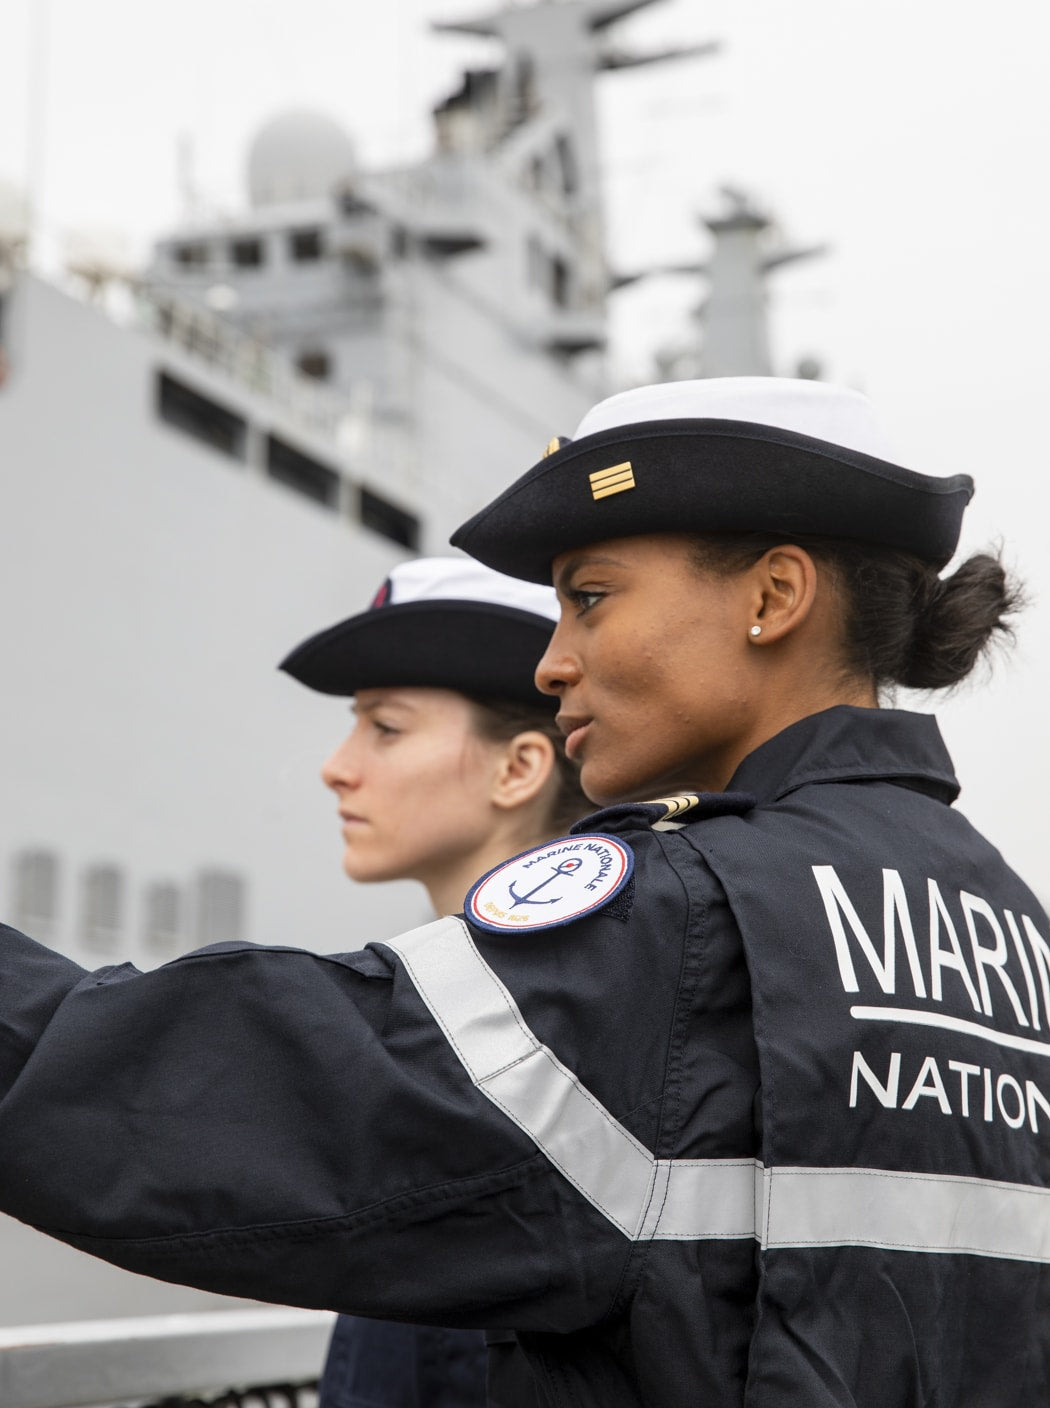 Patch brodé « Marine nationale »